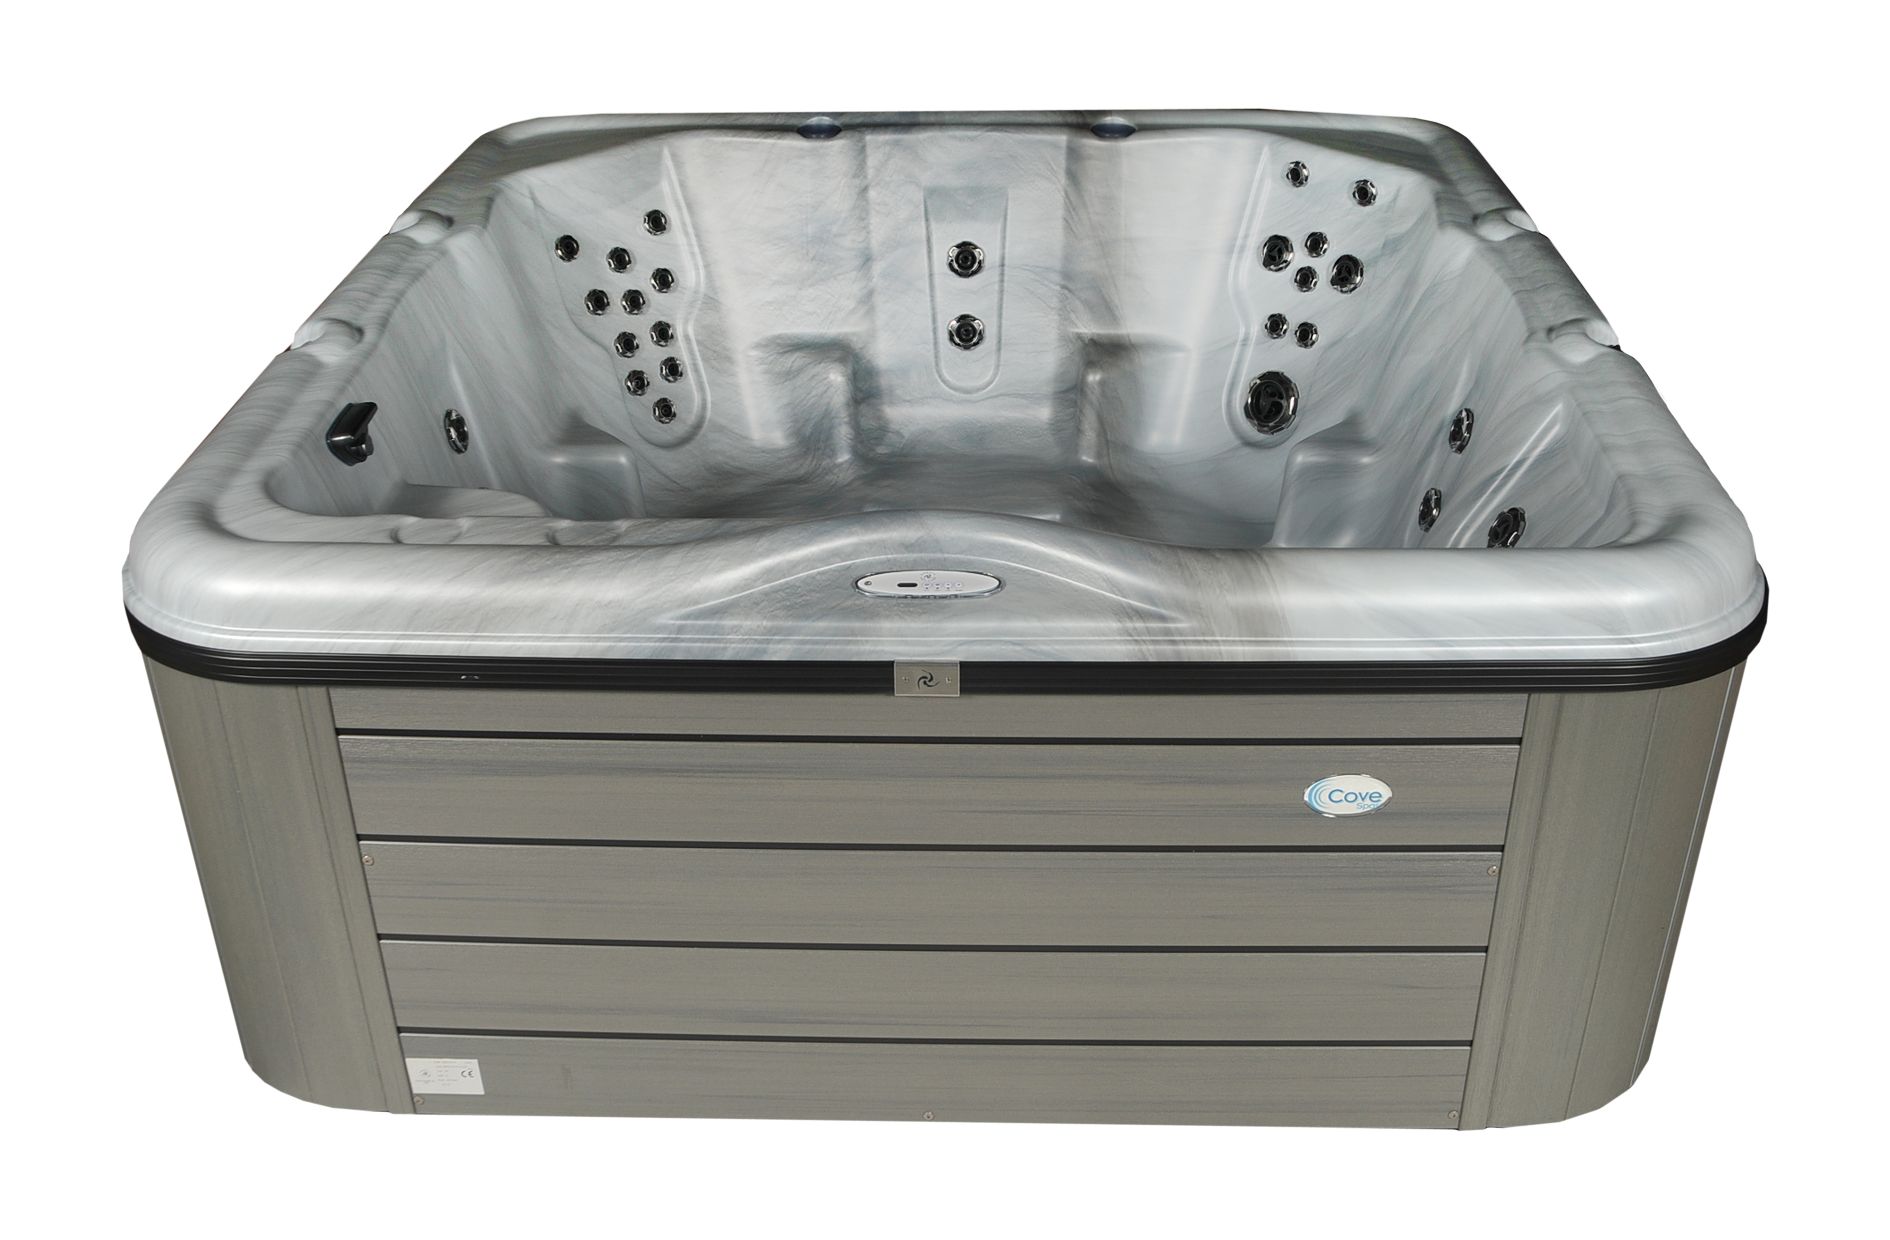 Large luxury hot tub